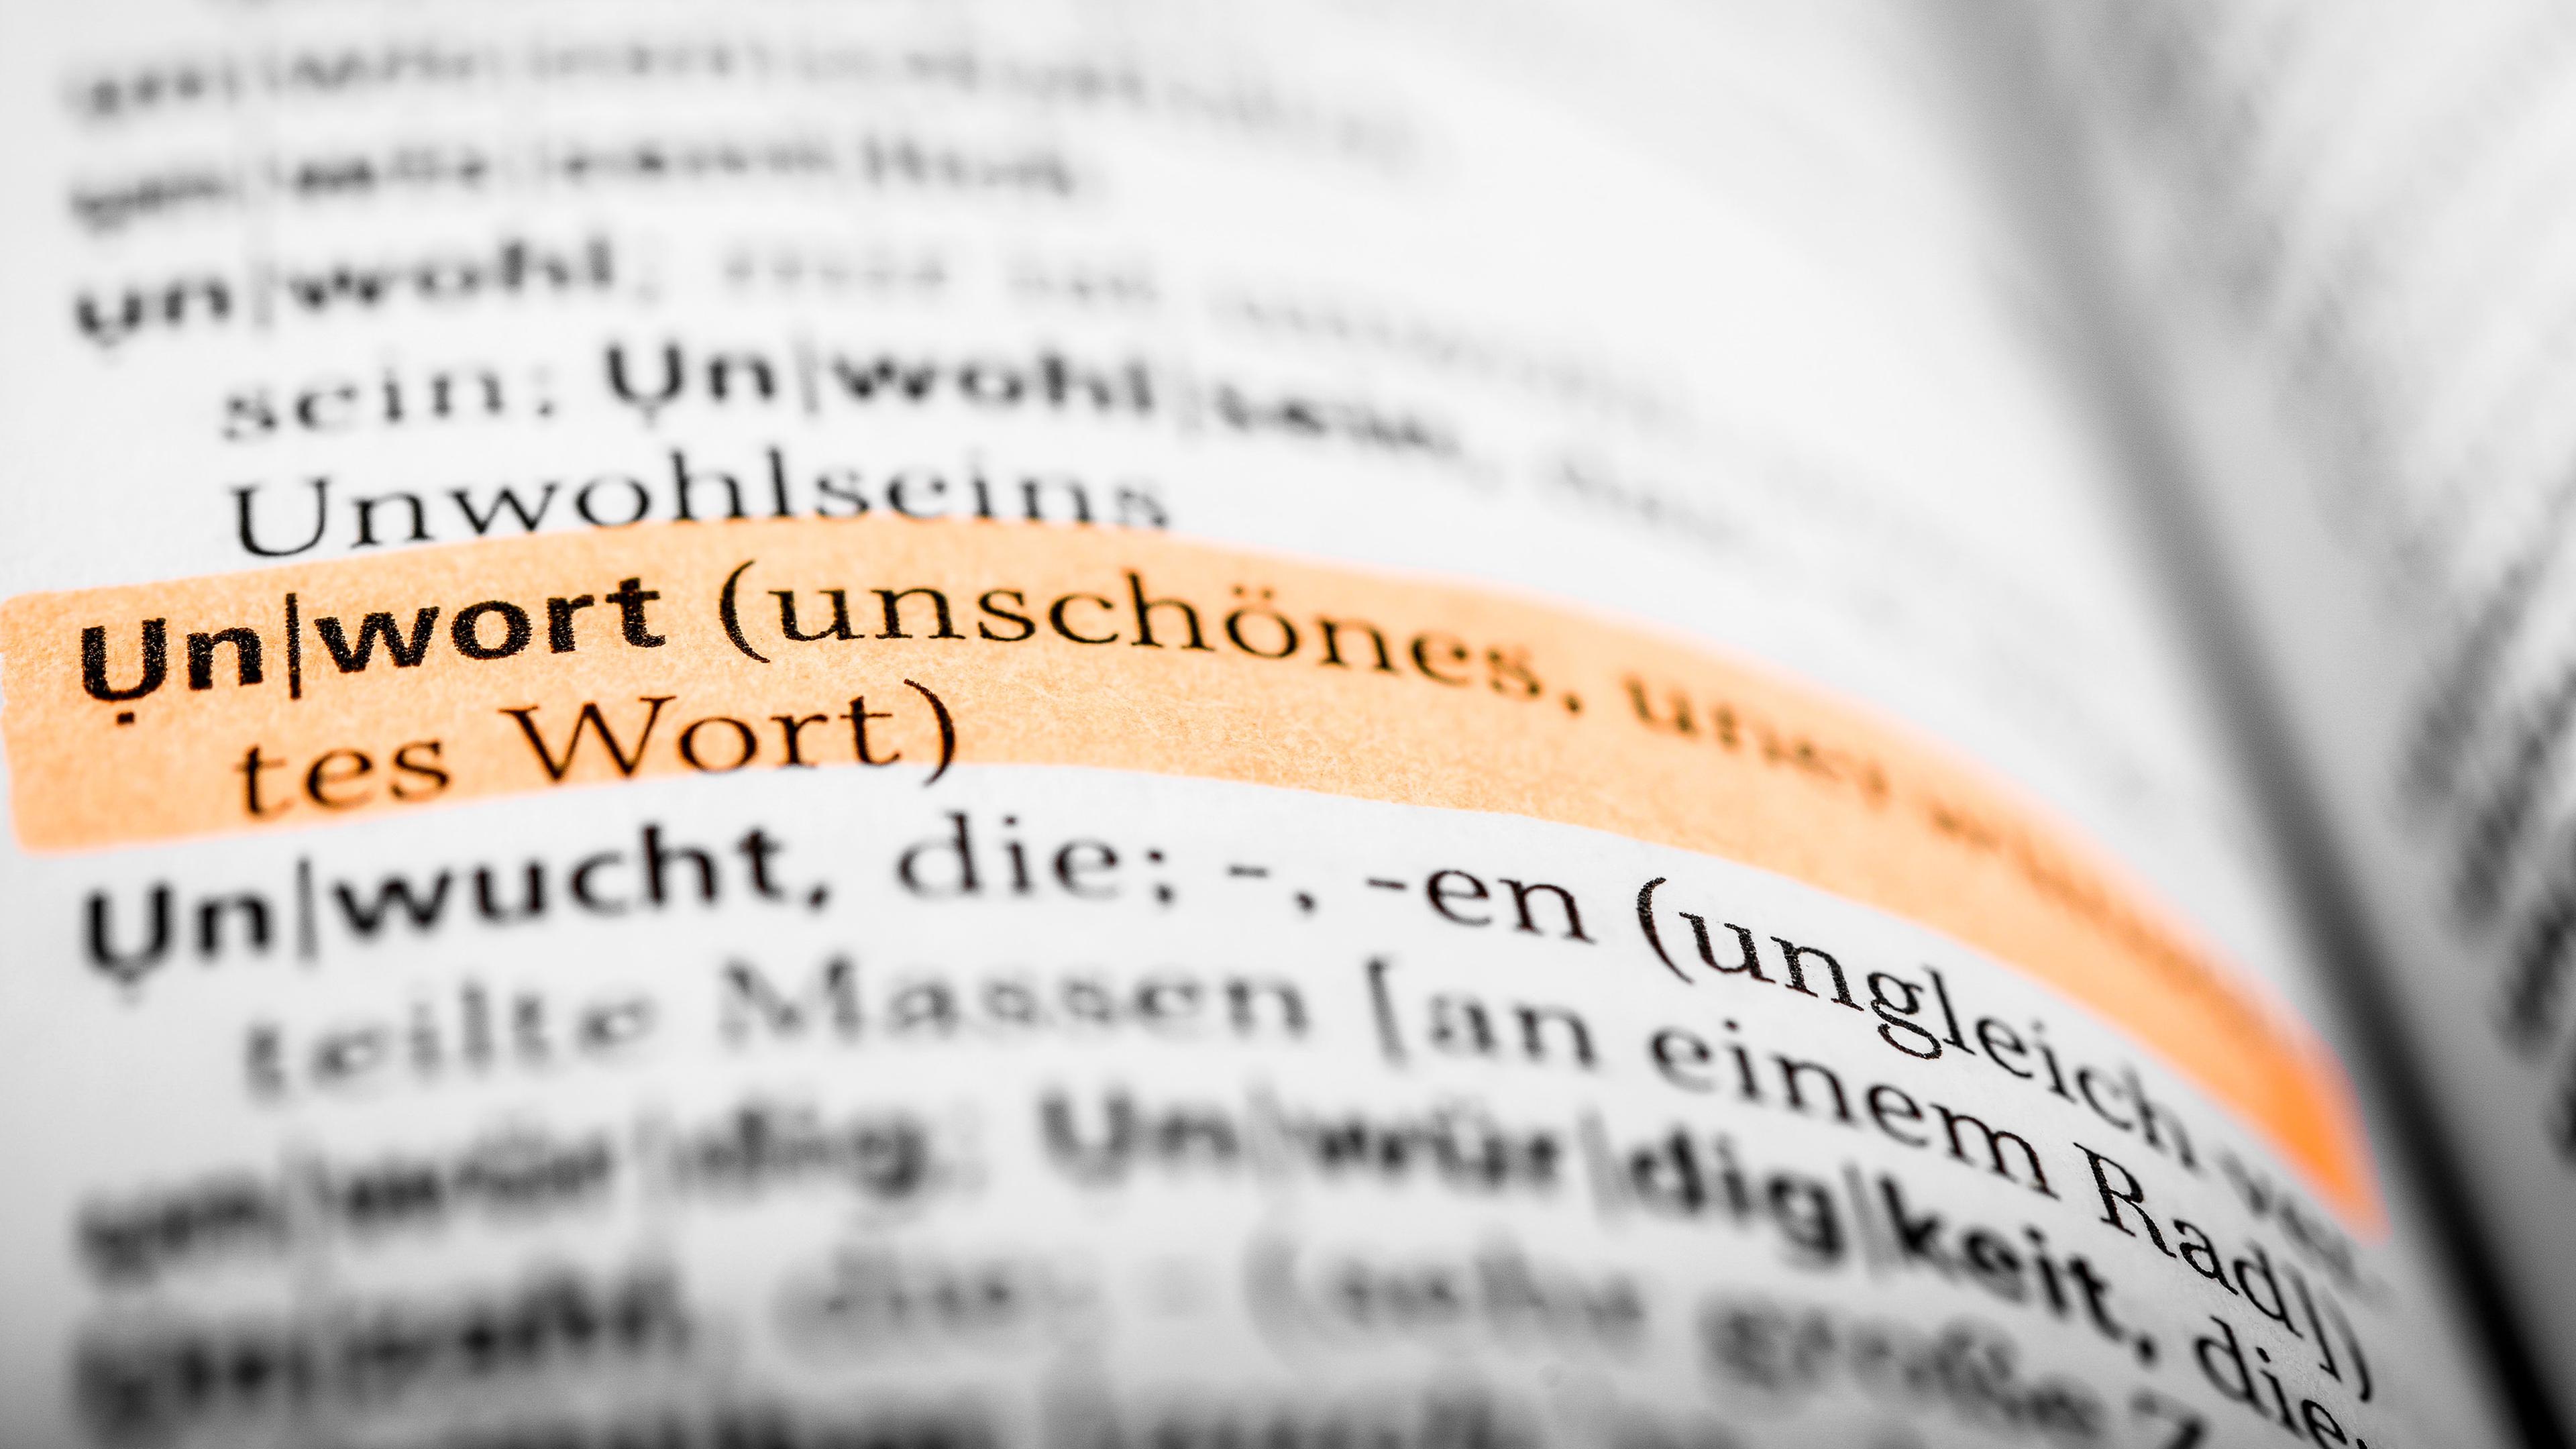 Archiv: Das Wort "Unwort" ist in einem Wörterbuch mit einem Textmarker markiert.